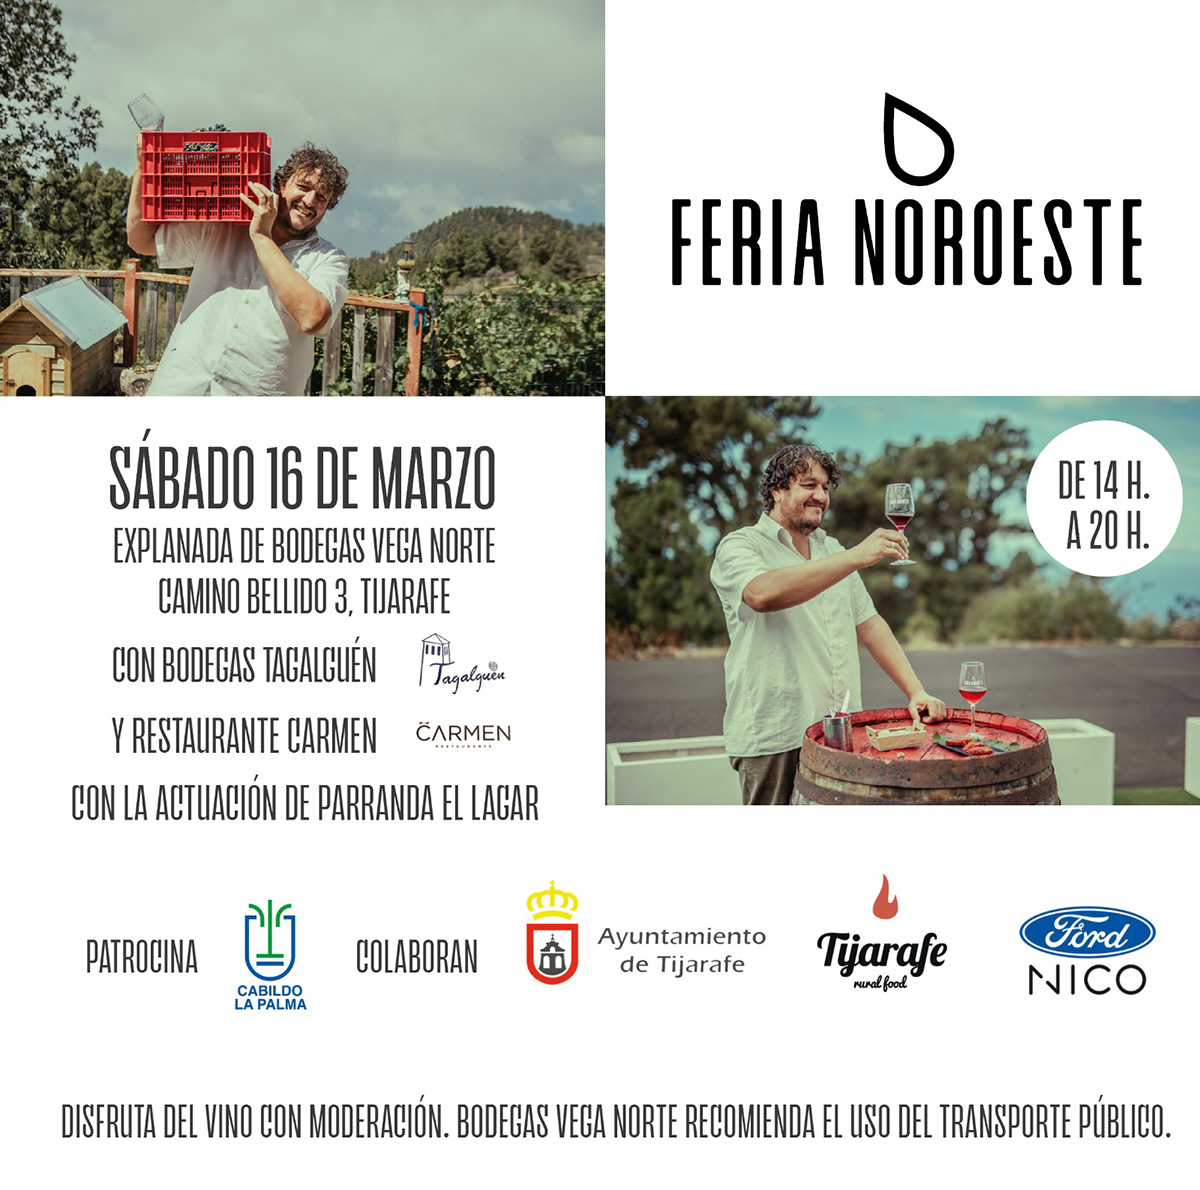 Este Sábado 16 de marzo nos vamos de Feria al Noroeste con Vinos Tagalguén, Restaurante Carmen y la actuación musical de la Parranda El Lagar